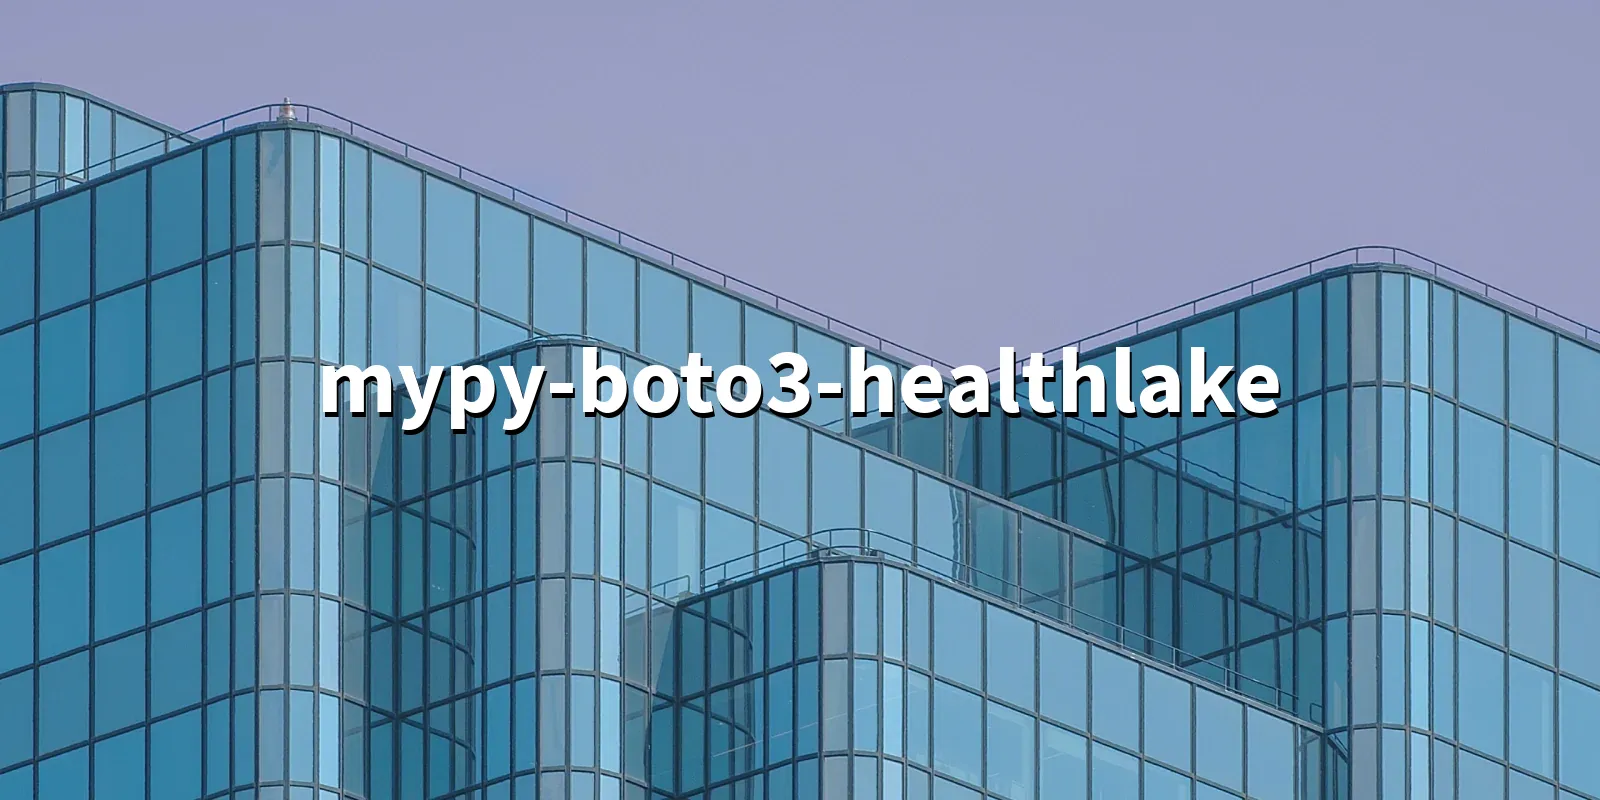 /pkg/m/mypy-boto3-healthlake/mypy-boto3-healthlake-banner.webp